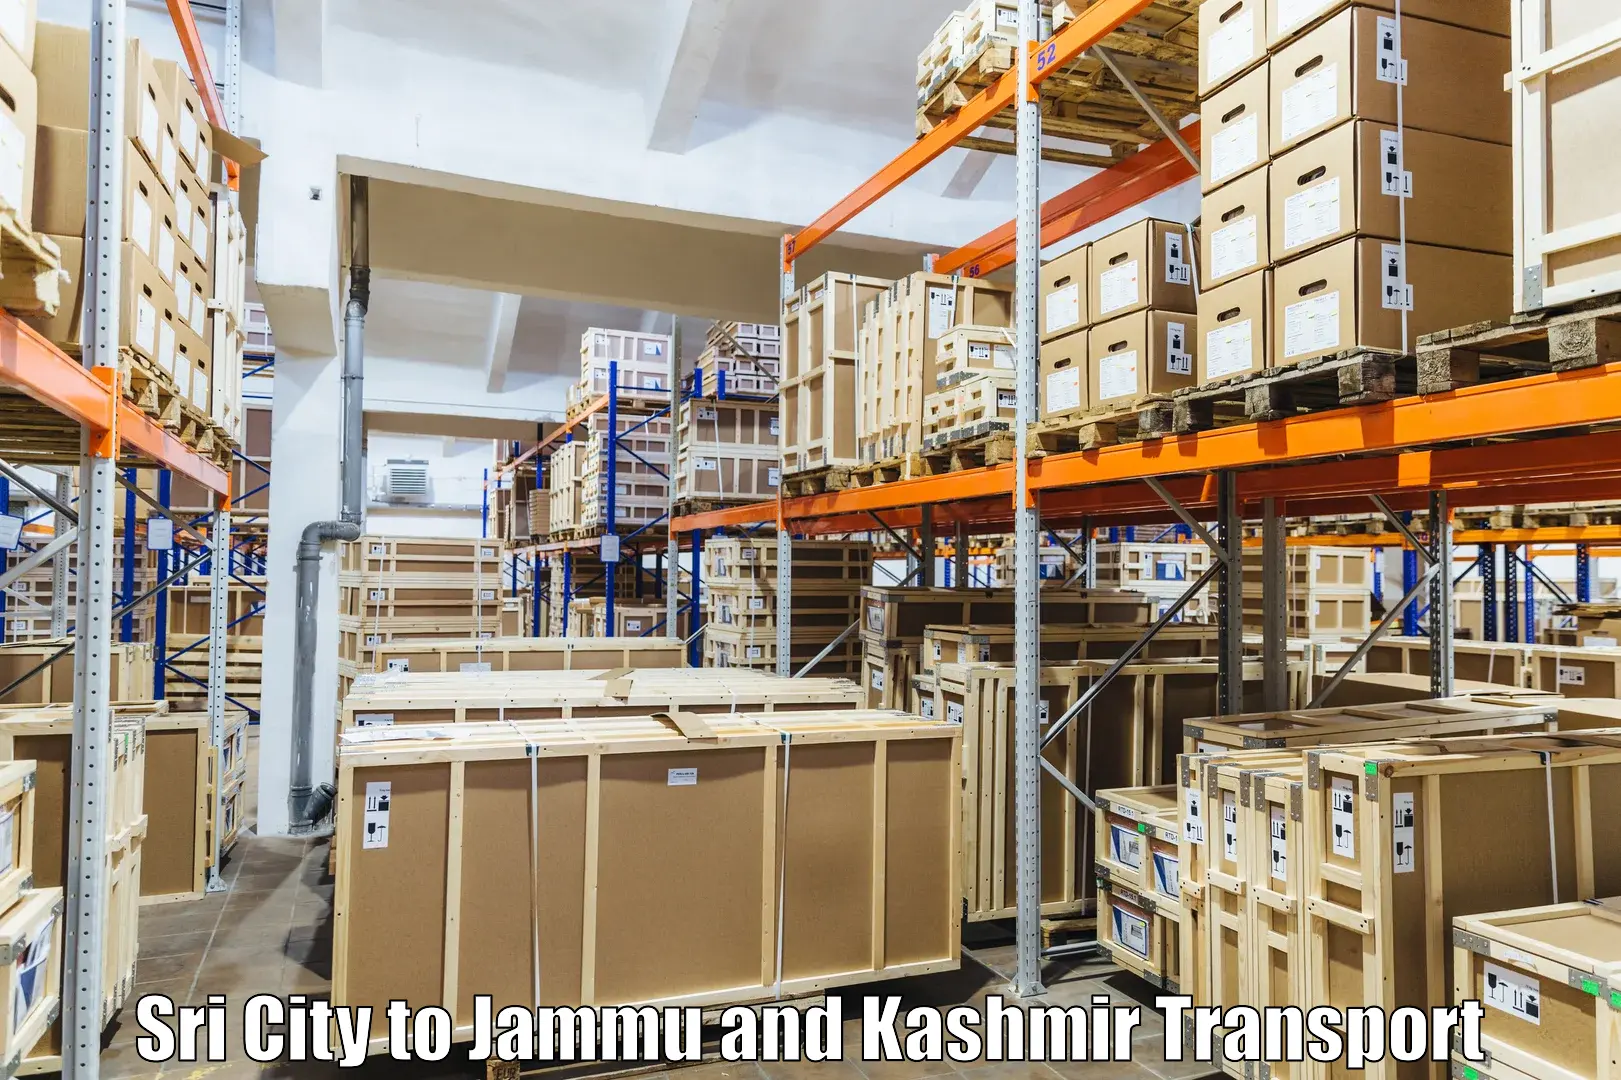 Shipping services in Sri City to Srinagar Kashmir